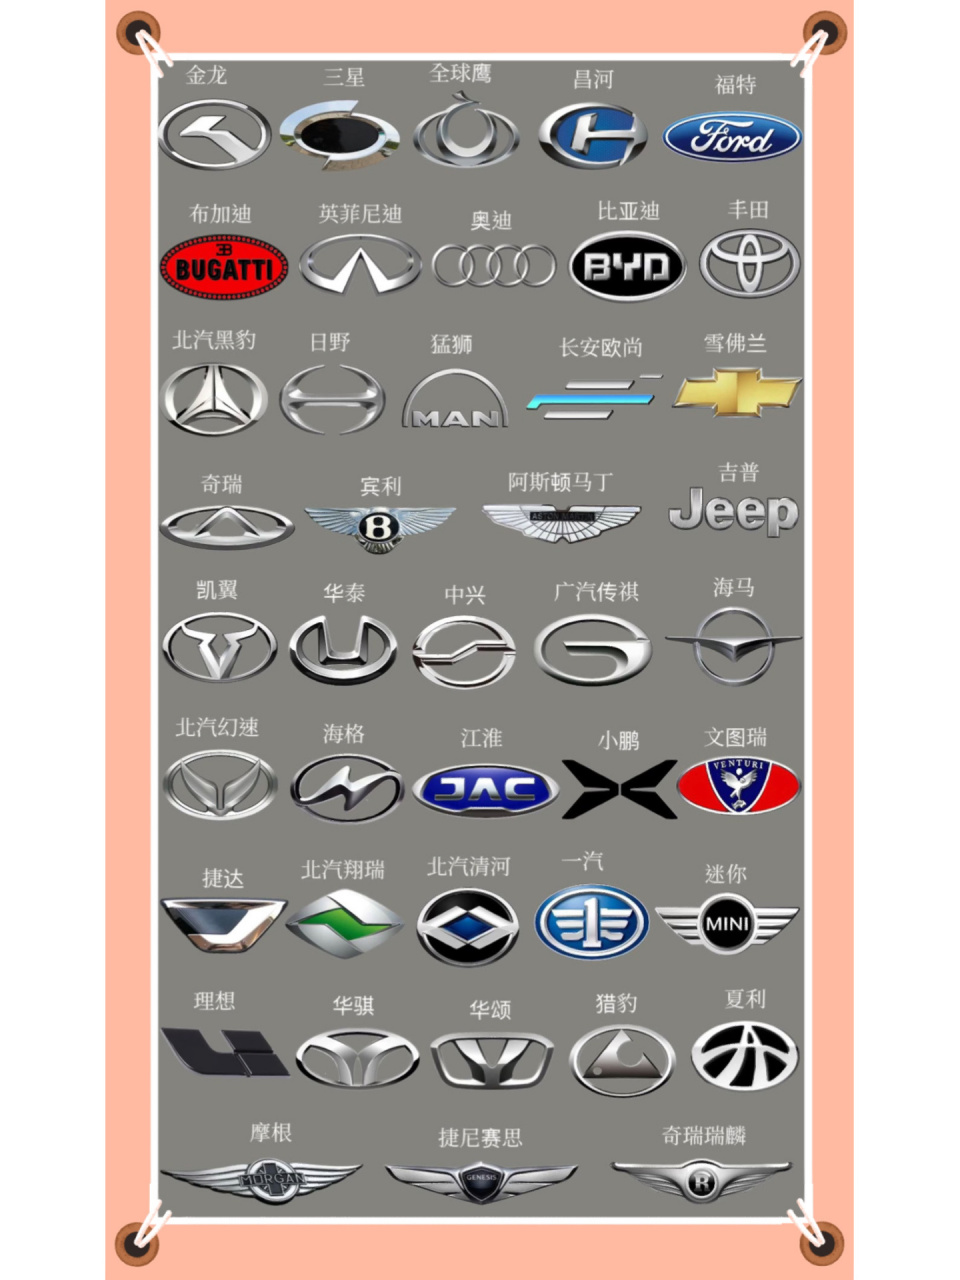 各汽车品牌车标汇集图鉴 有的已经发展到顶尖,有的早已不见踪影